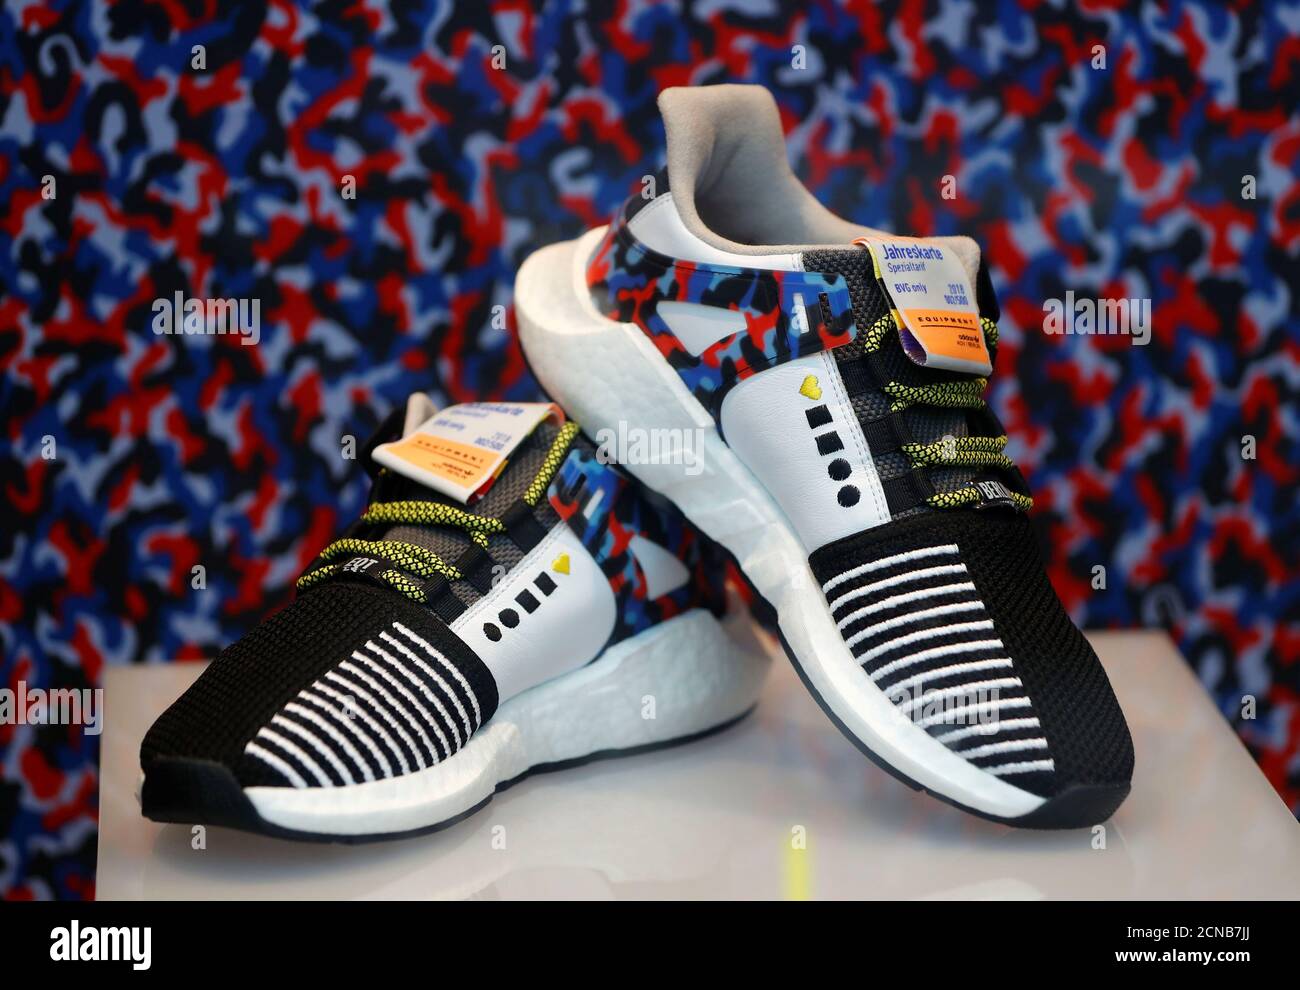 Adidas Berlin Store Stockfotos und -bilder Kaufen - Alamy